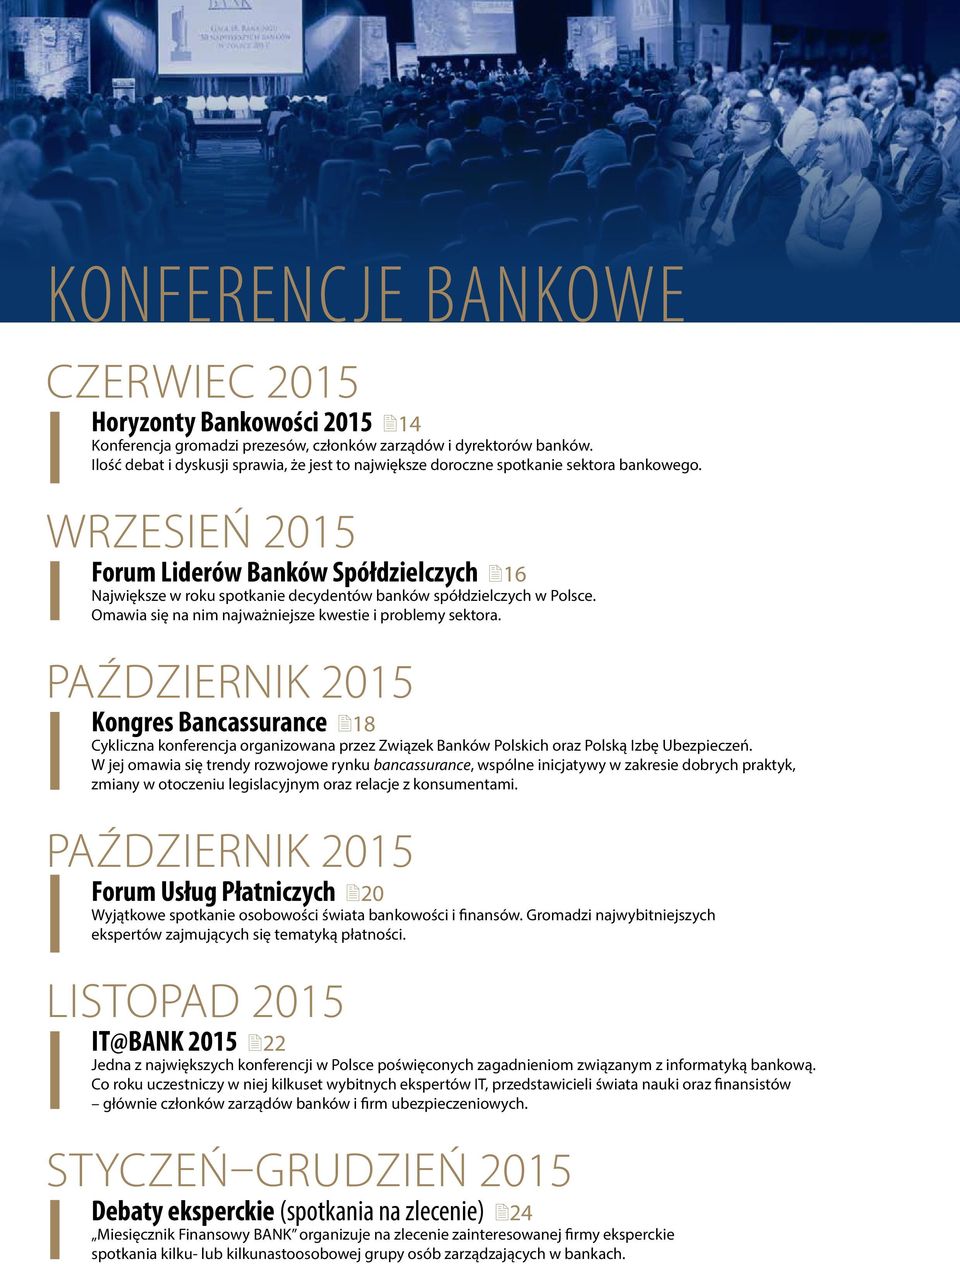 Wrzesień 2015 Forum Liderów Banków Spółdzielczych 16 Największe w roku spotkanie decydentów banków spółdzielczych w Polsce. Omawia się na nim najważniejsze kwestie i problemy sektora.